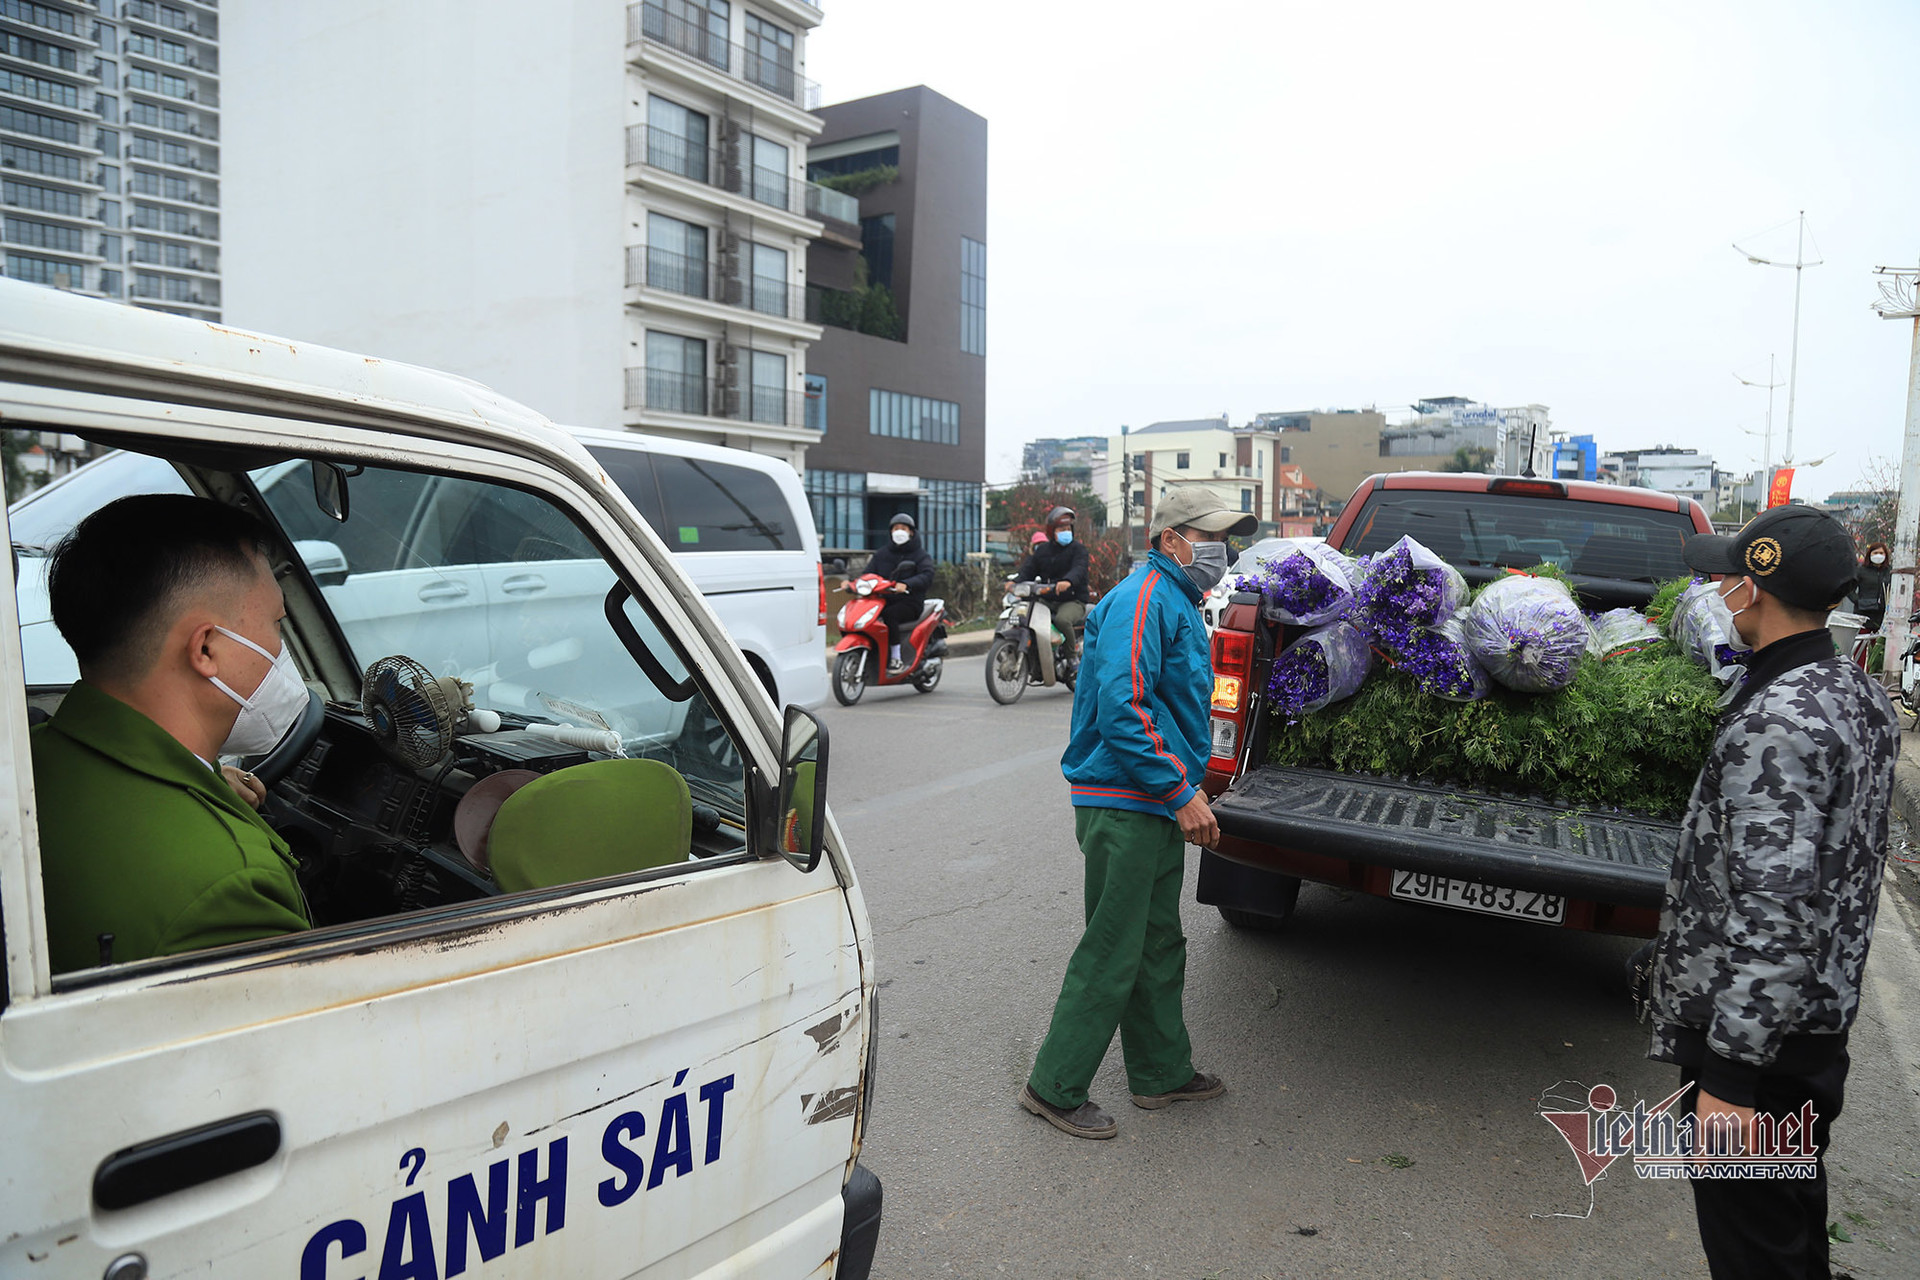 Dòng xe xuôi ngược trên hè dưới phố ngày 28 Tết, ô tô 'bò' trên đường Hà Nội